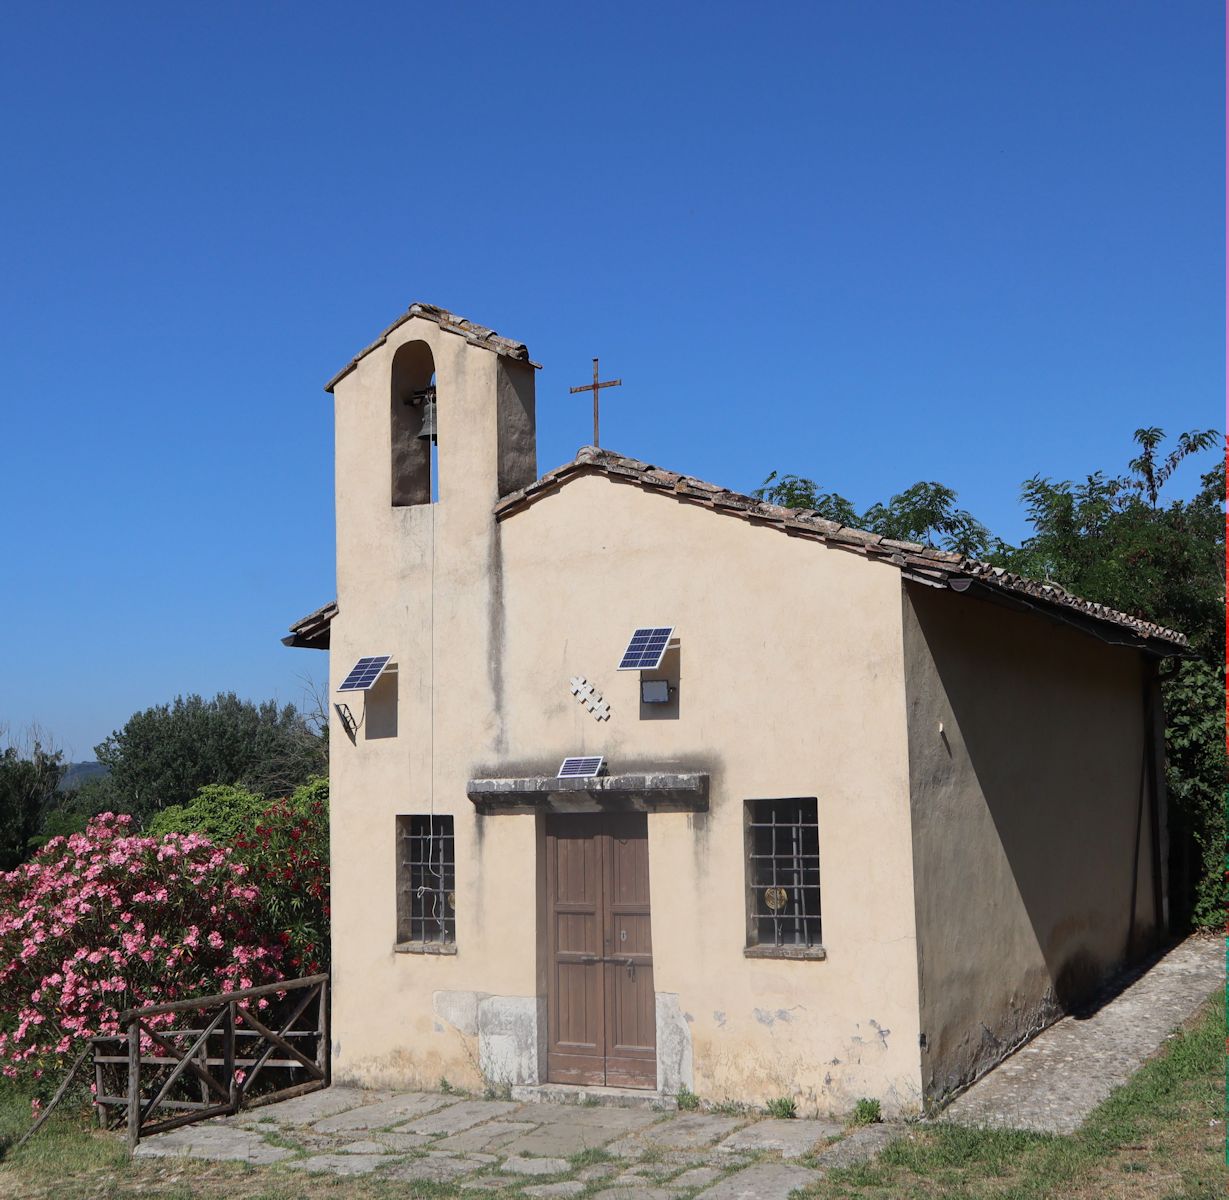 heutige Kirche San Vittore am Tiber nahe Otricoli